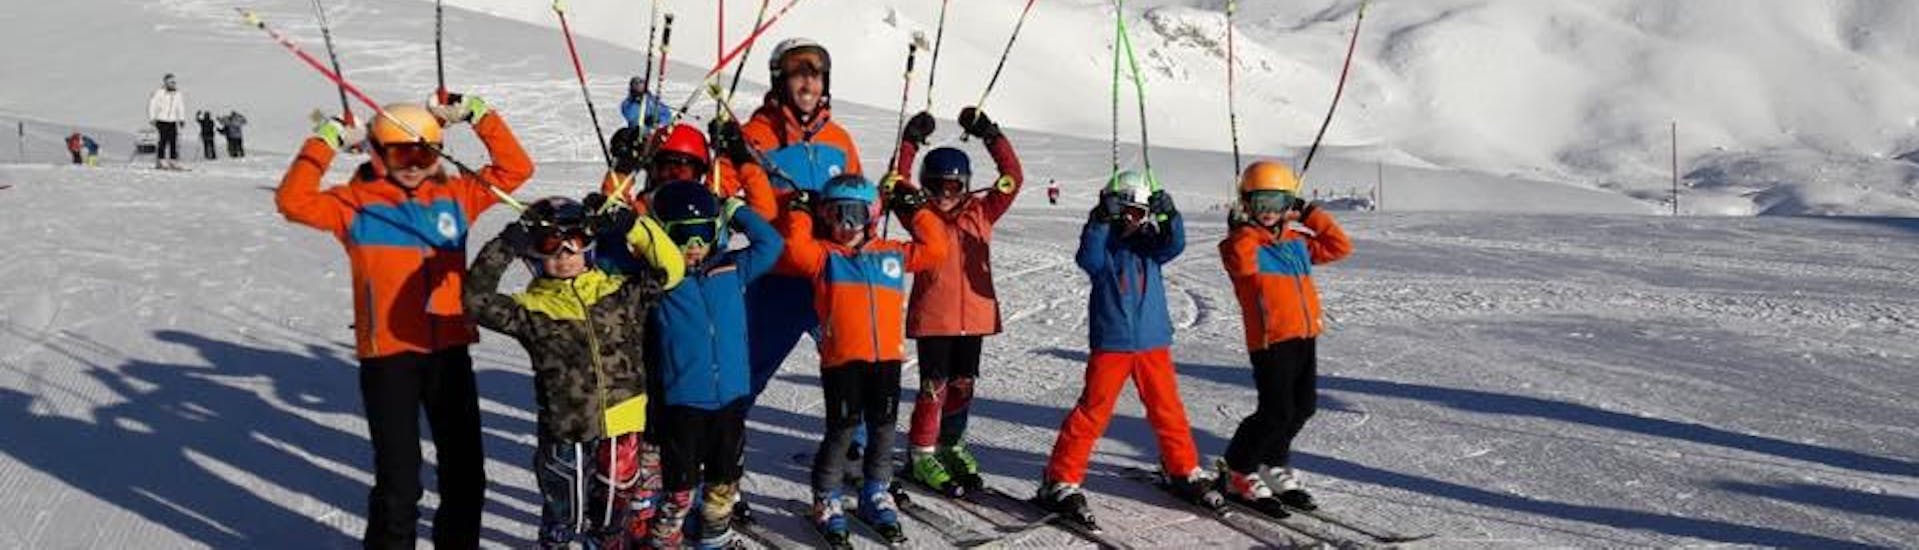 Skilessen voor kinderen vanaf 5 jaar voor alle niveaus.